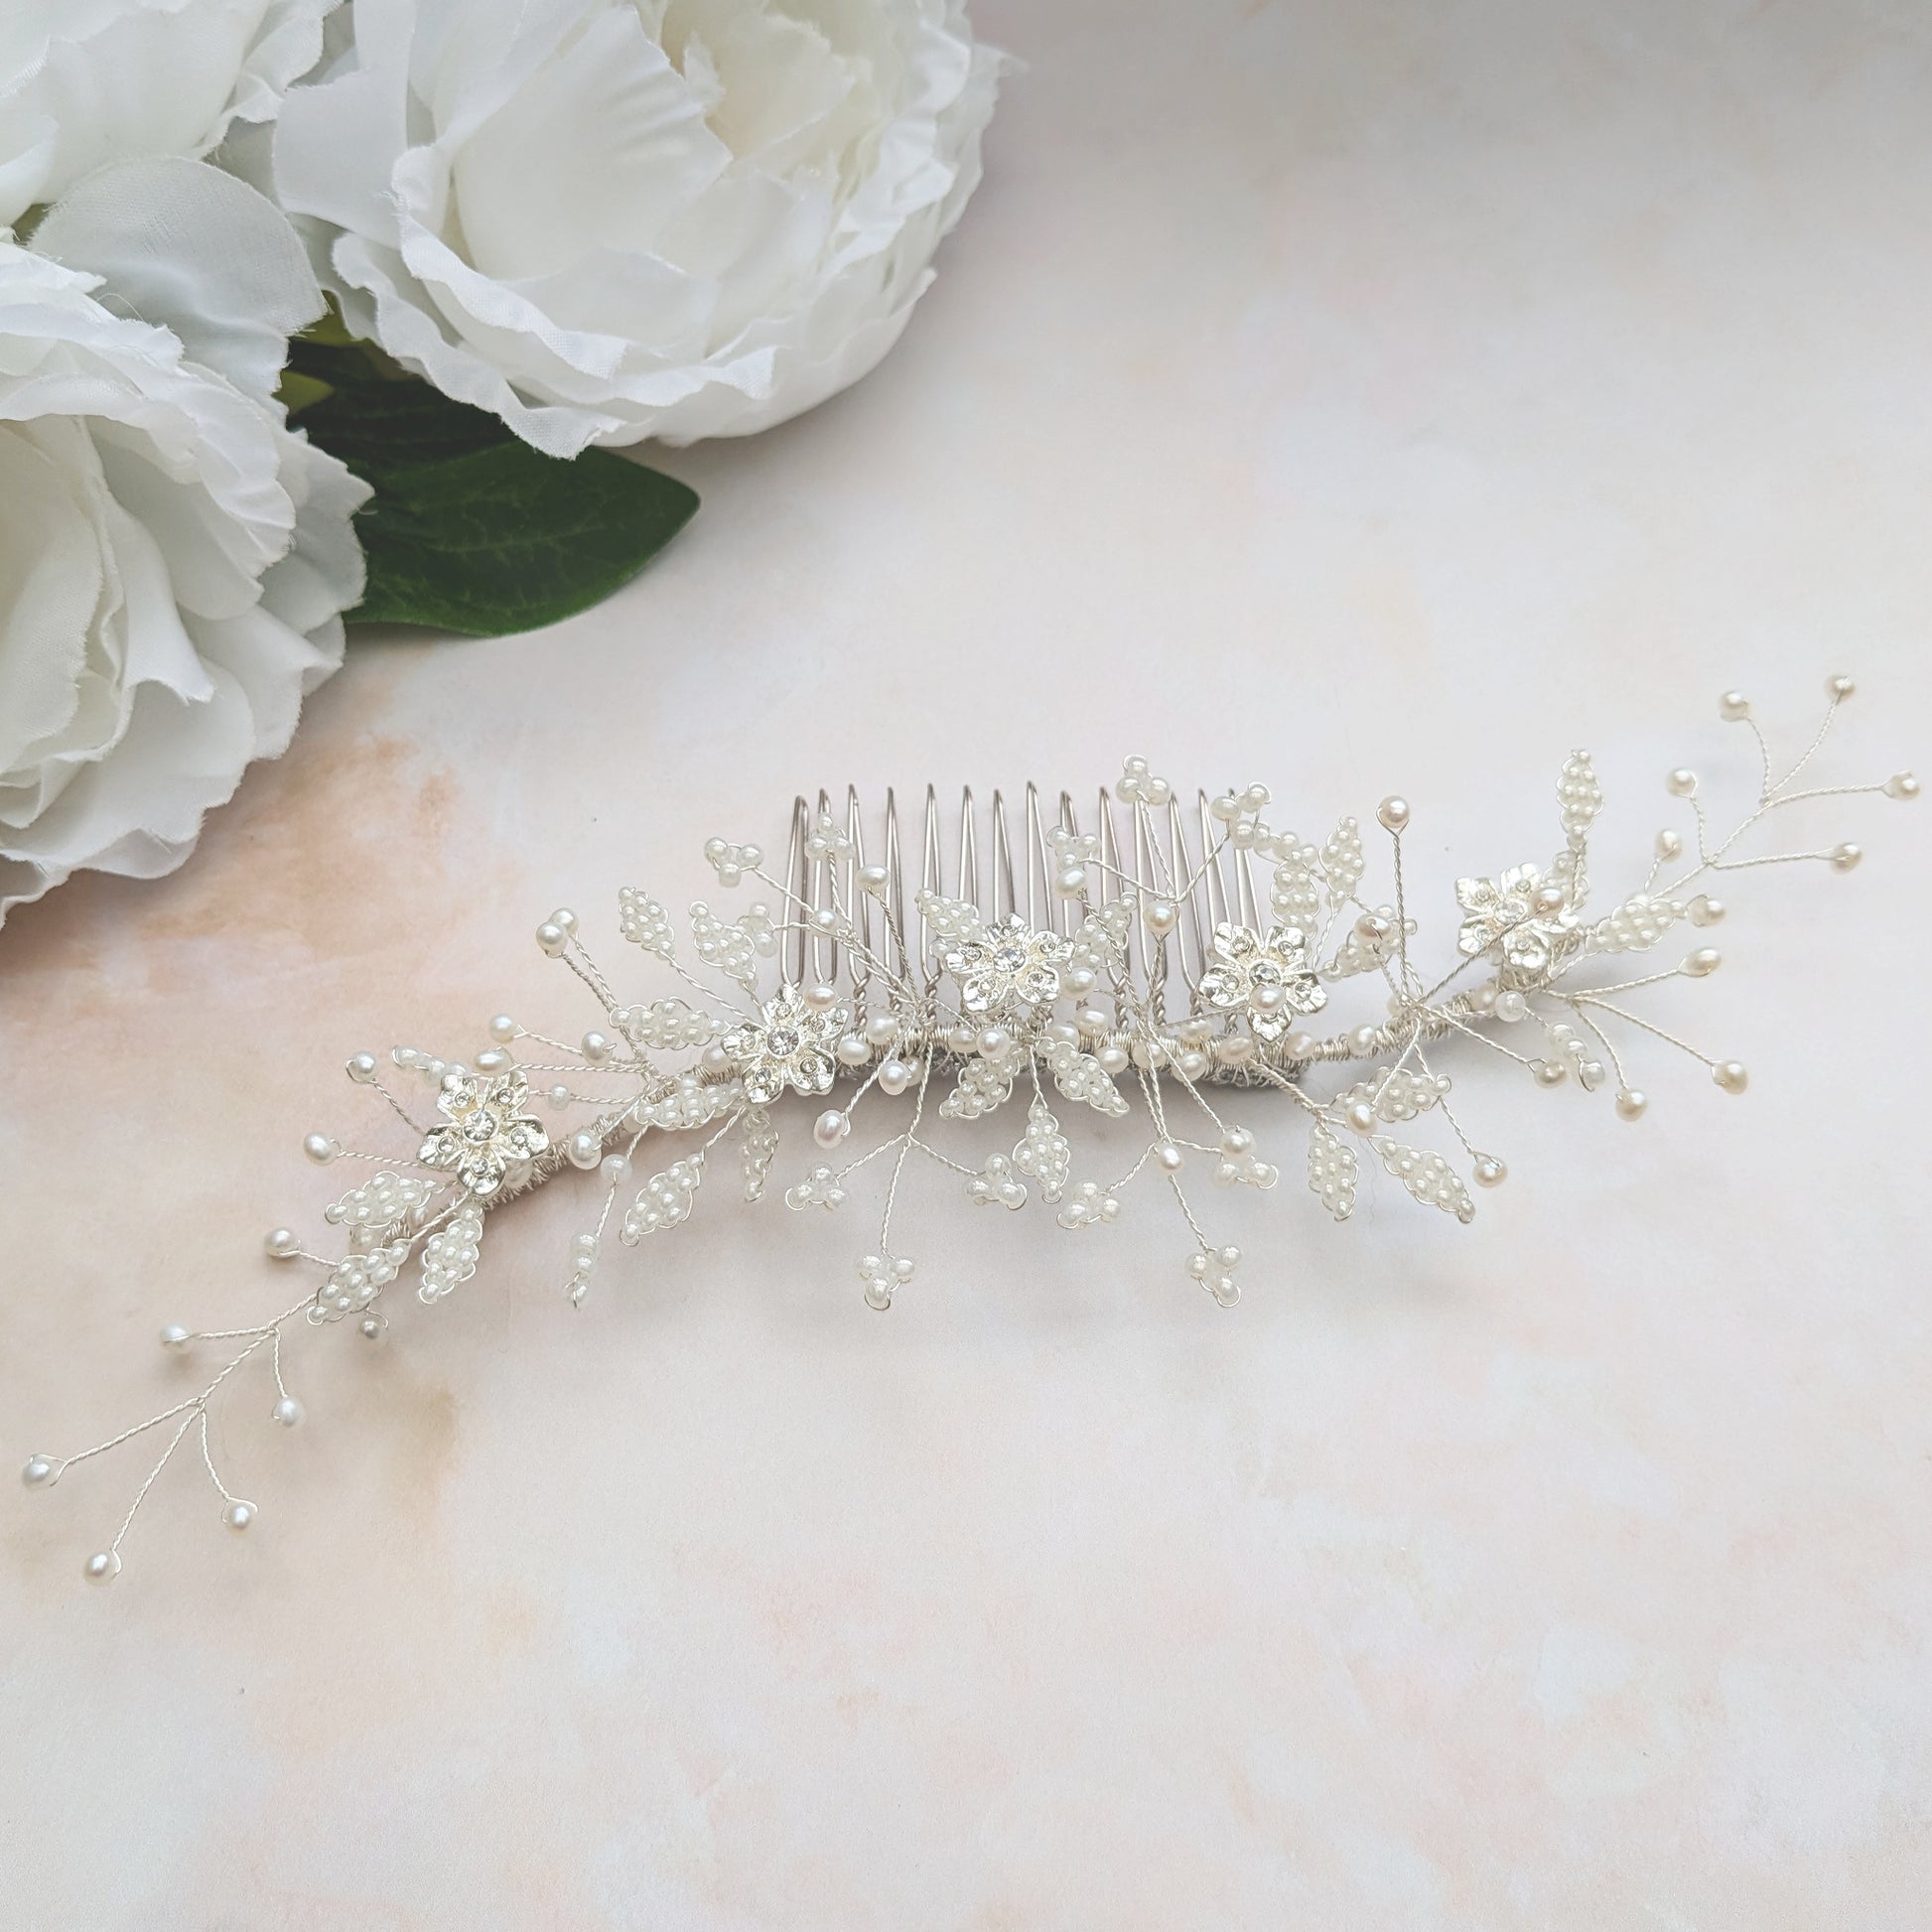 Pearl & Crystal floral wedding headpiece for brides detail - Susie warner